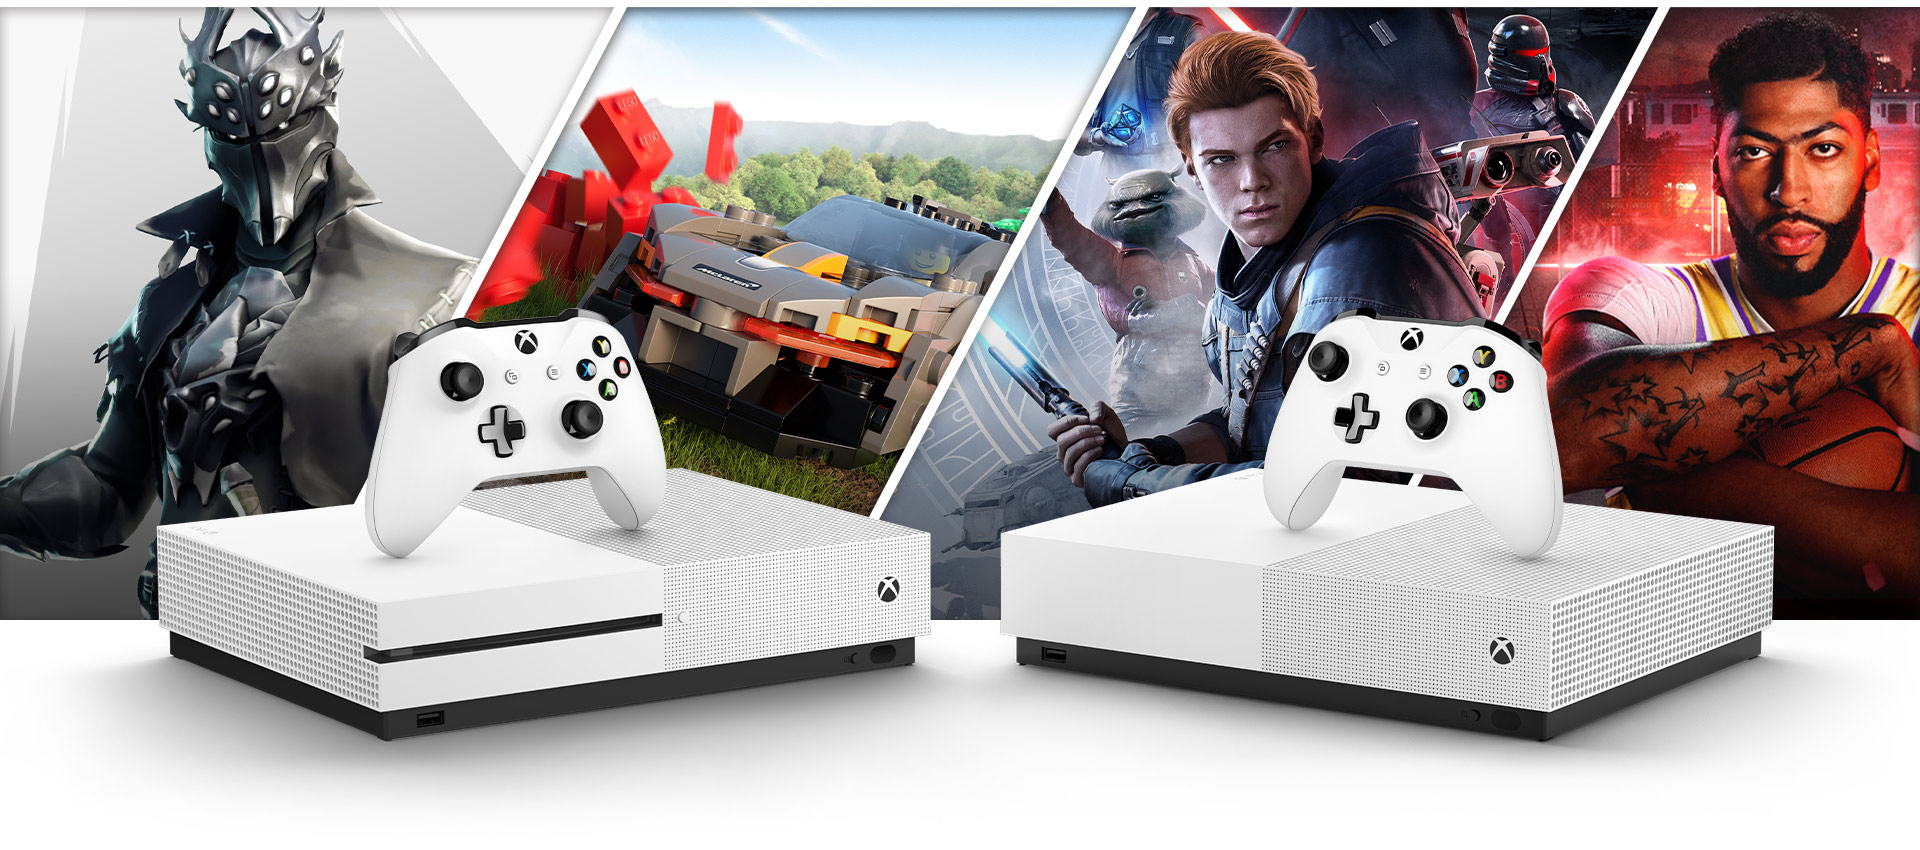 Консоли Xbox One S и Xbox One S All Digital Edition на фоне изображений из игр Fortnite, Forza Horizon 4, Star Wars Jedi Fallen Order и NBA 2K20